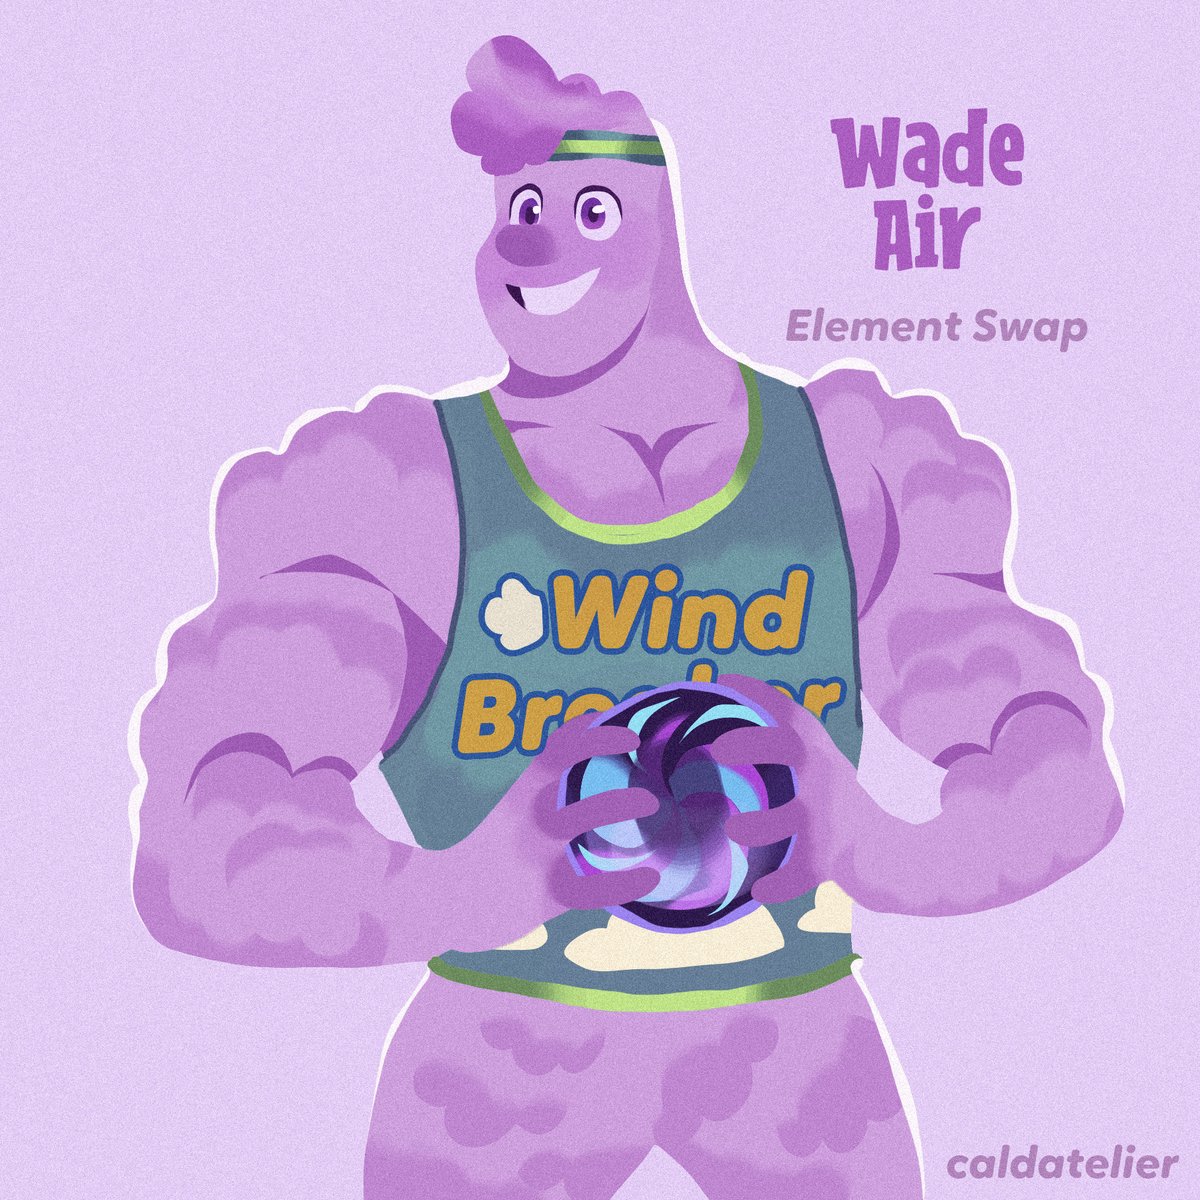 Wade Air AU

#ElementalPixar #elementalfanart